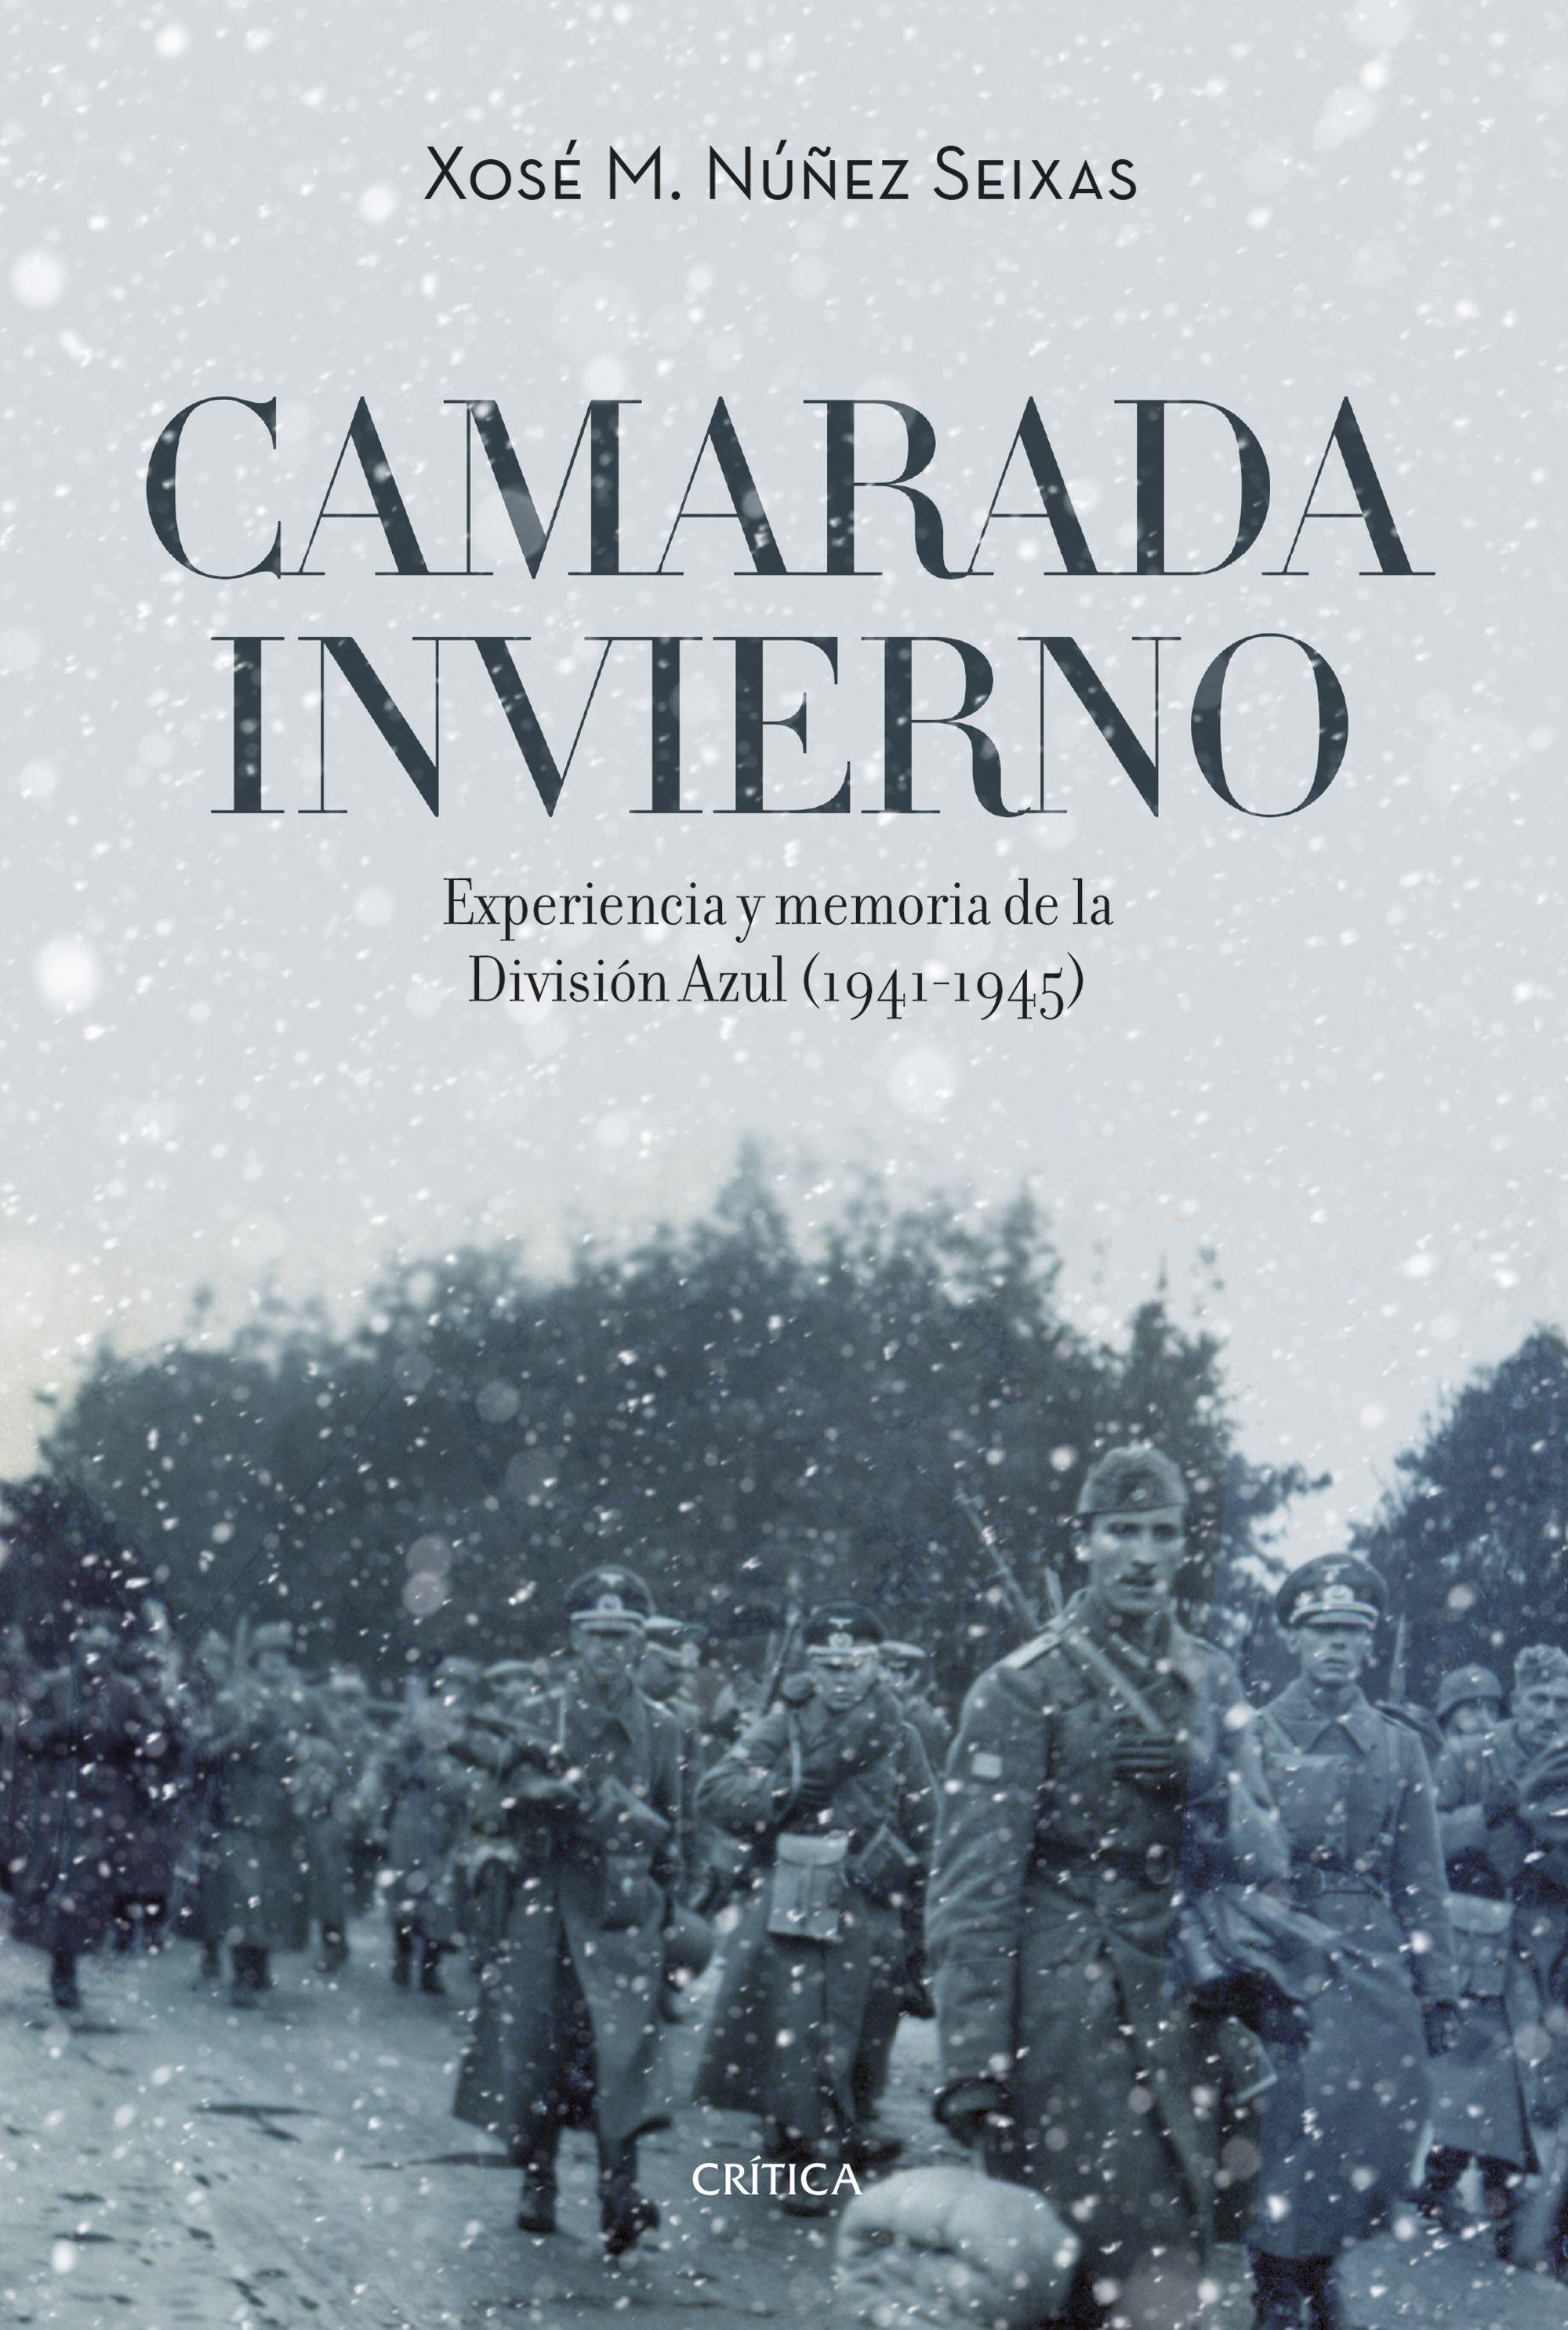 Camarada Invierno "Experiencia y Memoria de la División Azul (1941-1945)". 